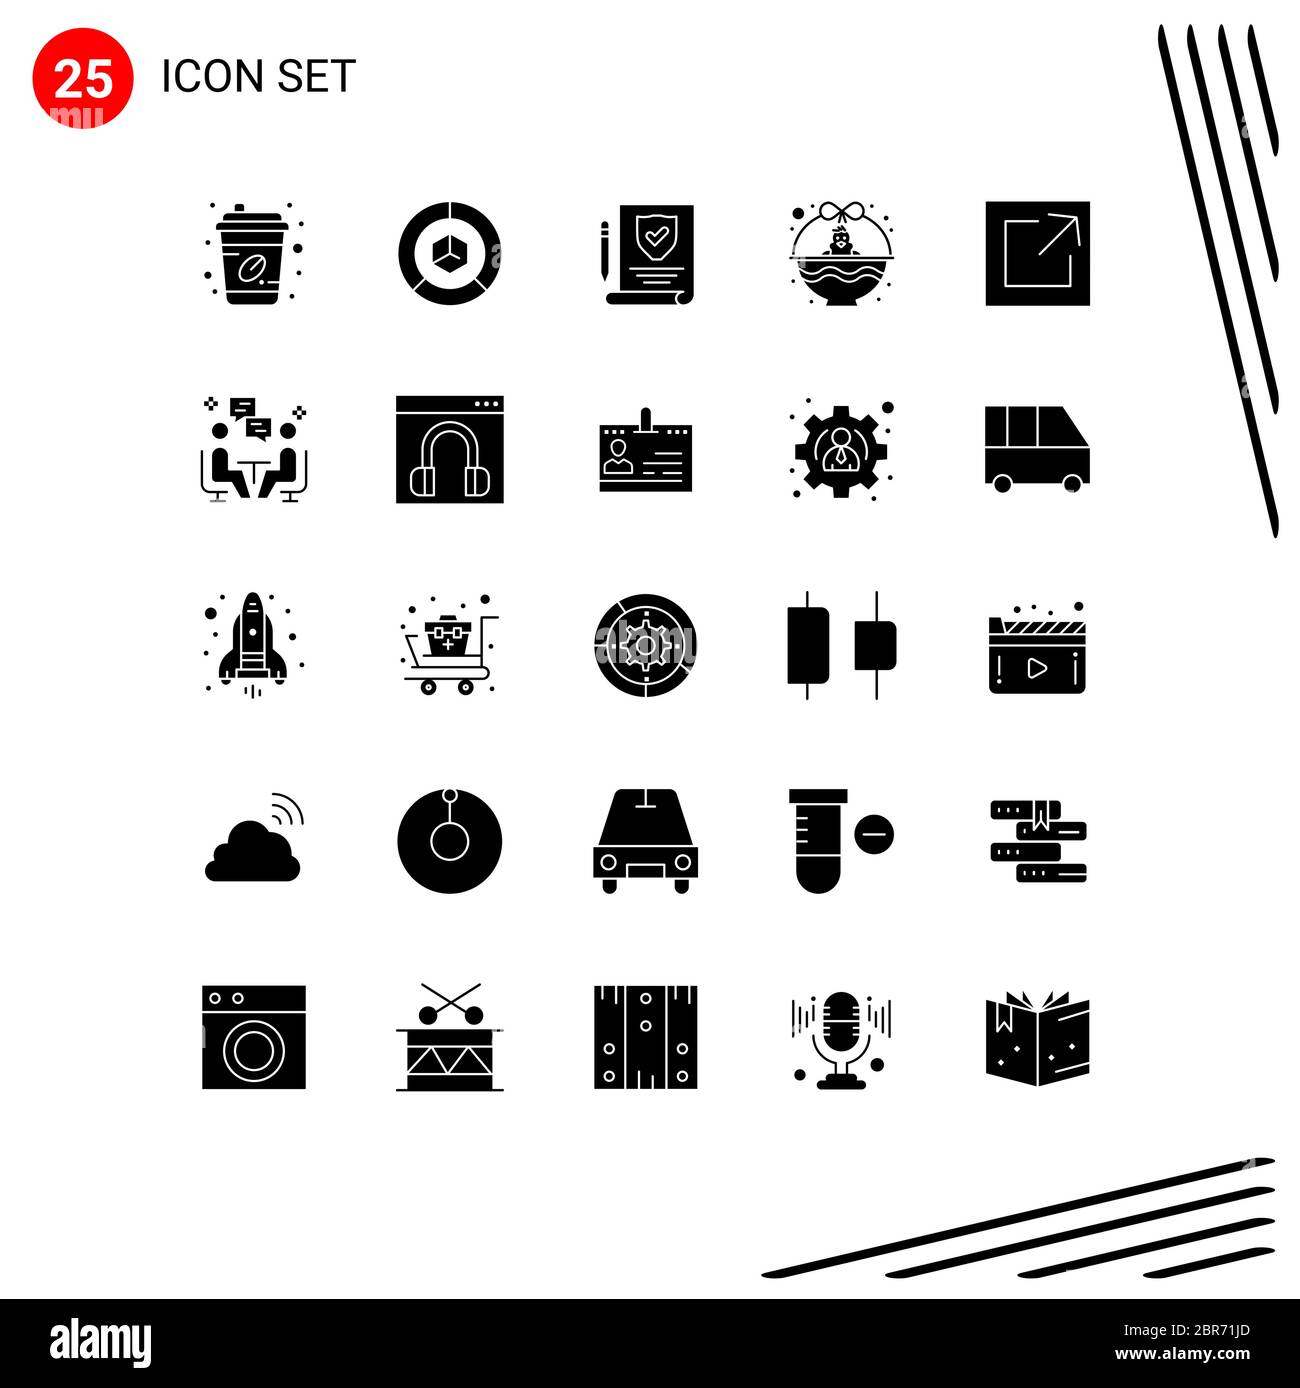 Caja Decorativa De Resina Con Diseño De Flechas Blancas Y Negras